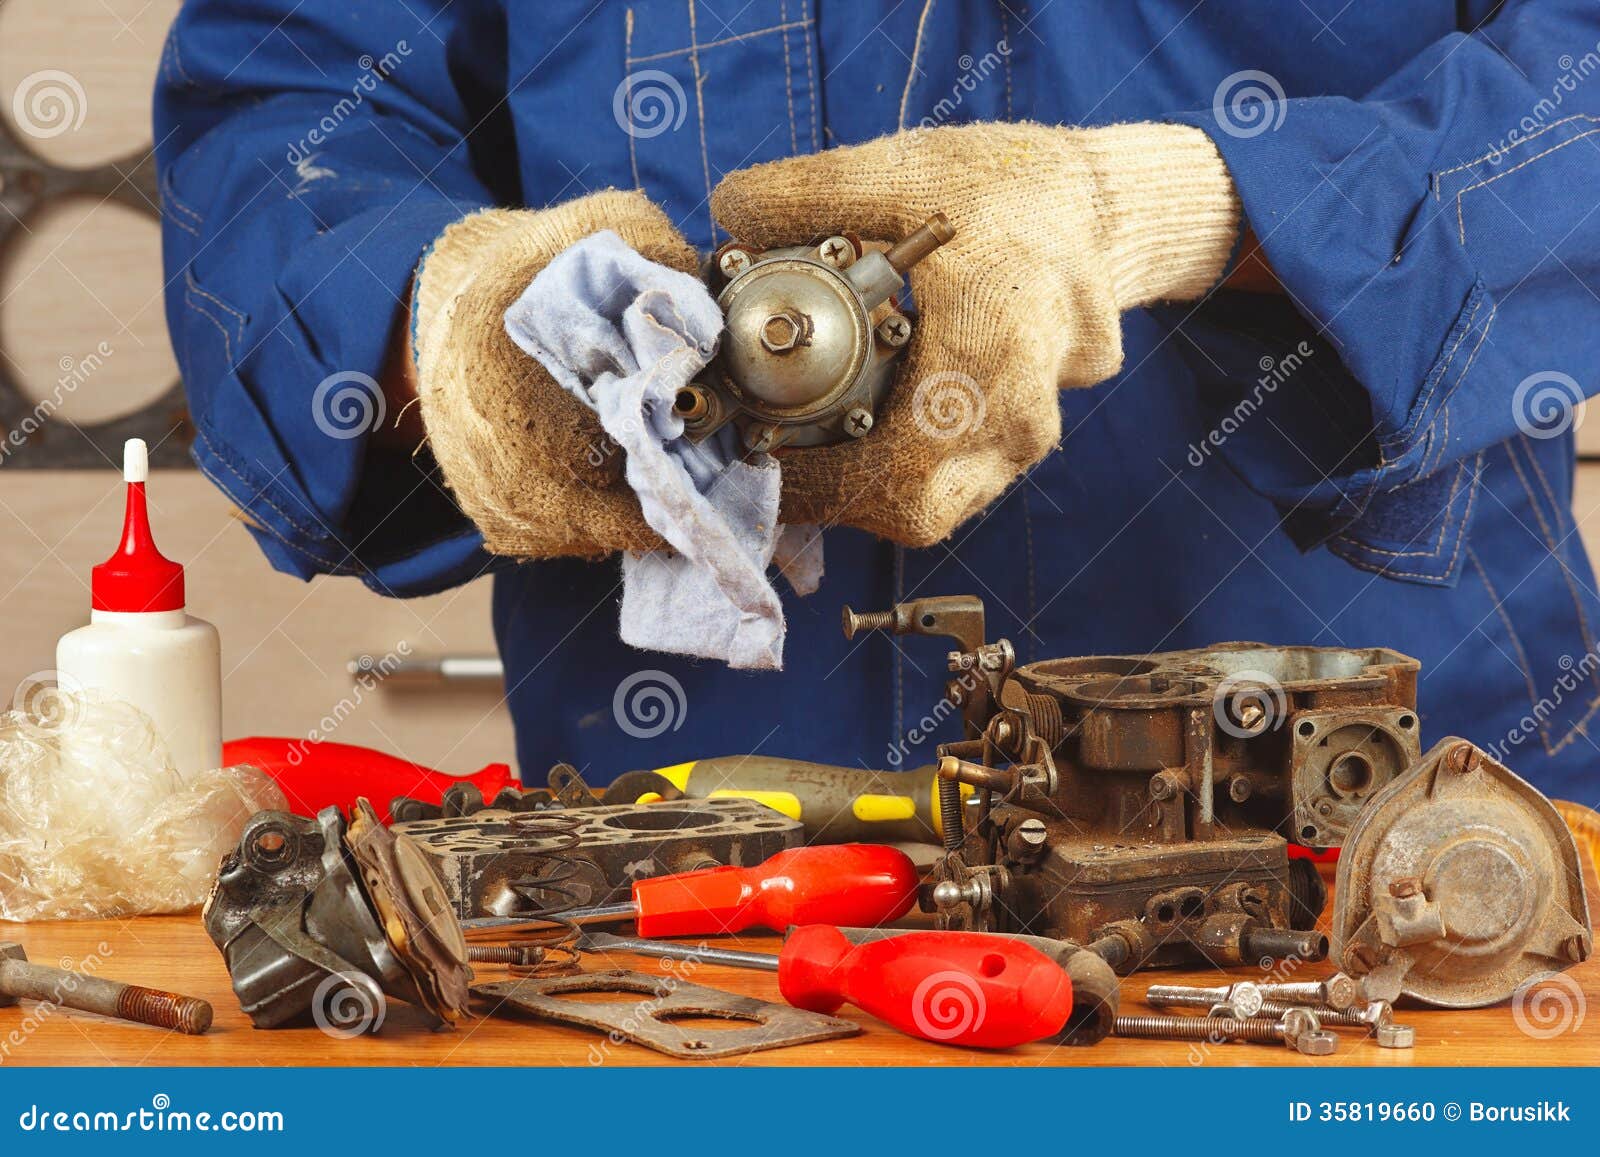 Repairman Repairing Parts Car Engine in the Workshop Stock Photo ...